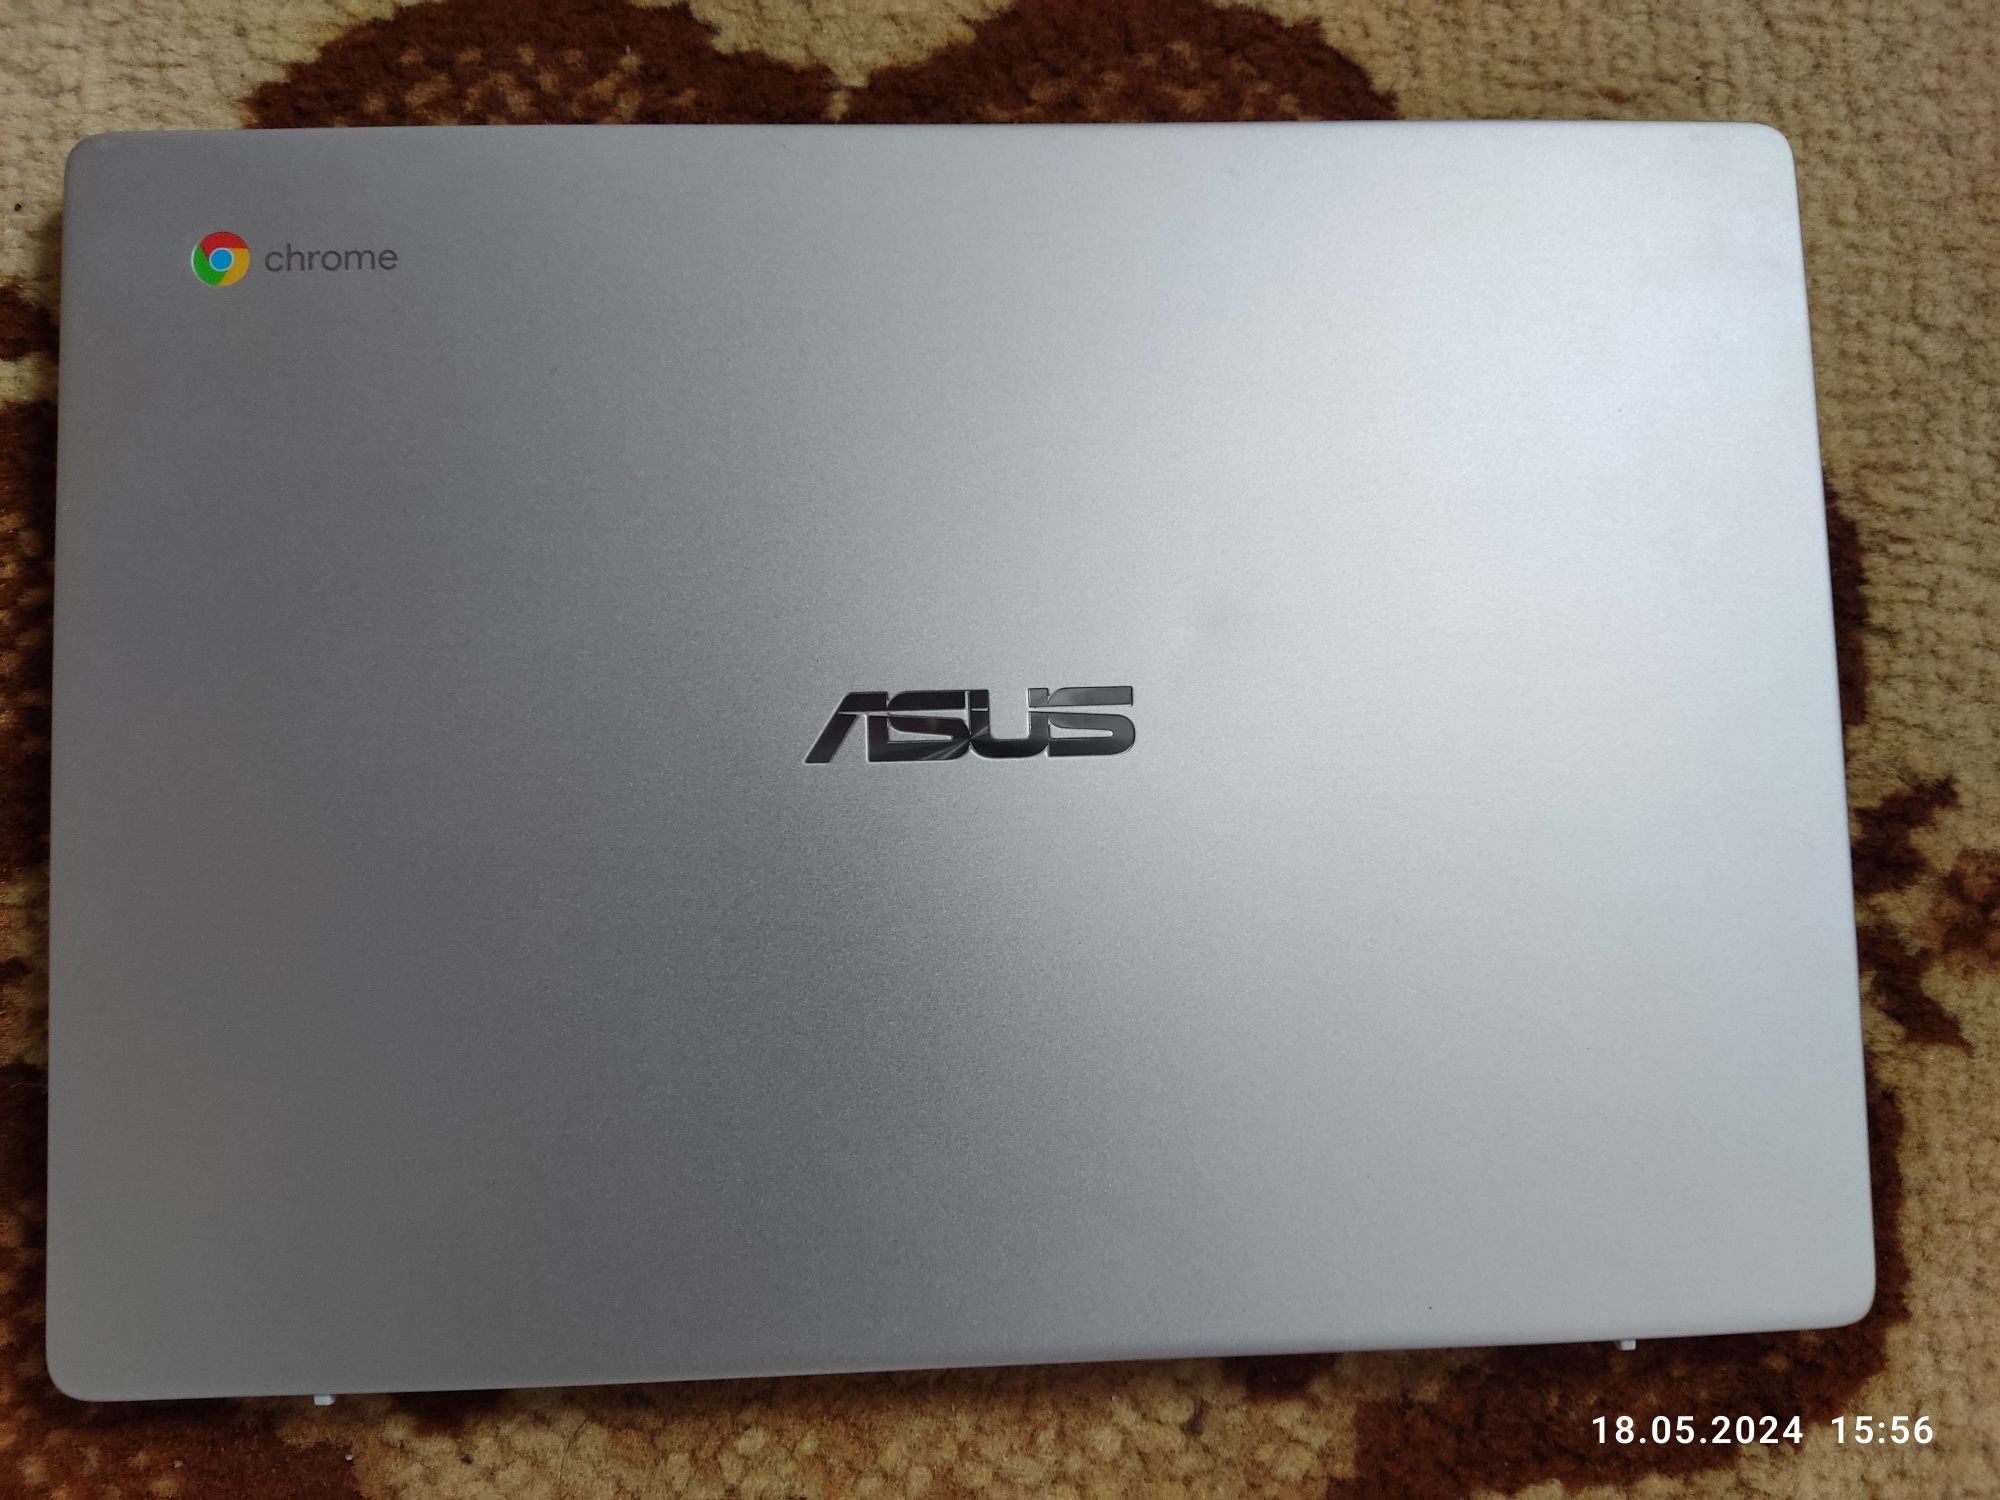 Laptop de vânzare ASUS Chromebook C423. Preț negociabil